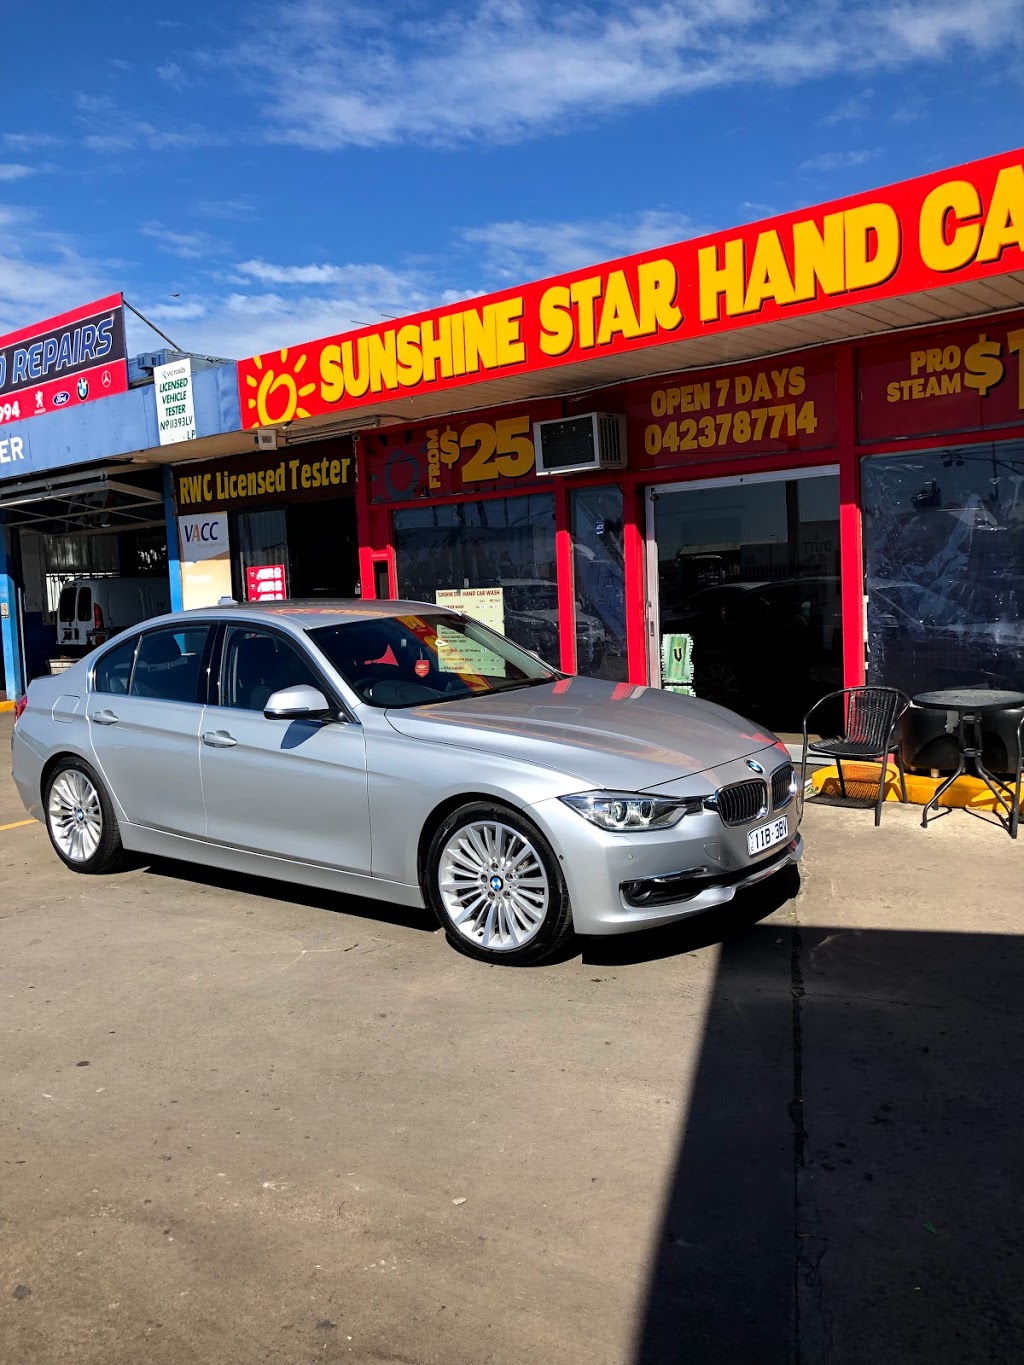 Sunshine Star Hand Car Wash & Detailing | car wash | 2a Market Rd, Sunshine VIC 3020, Australia | 0423787714 OR +61 423 787 714